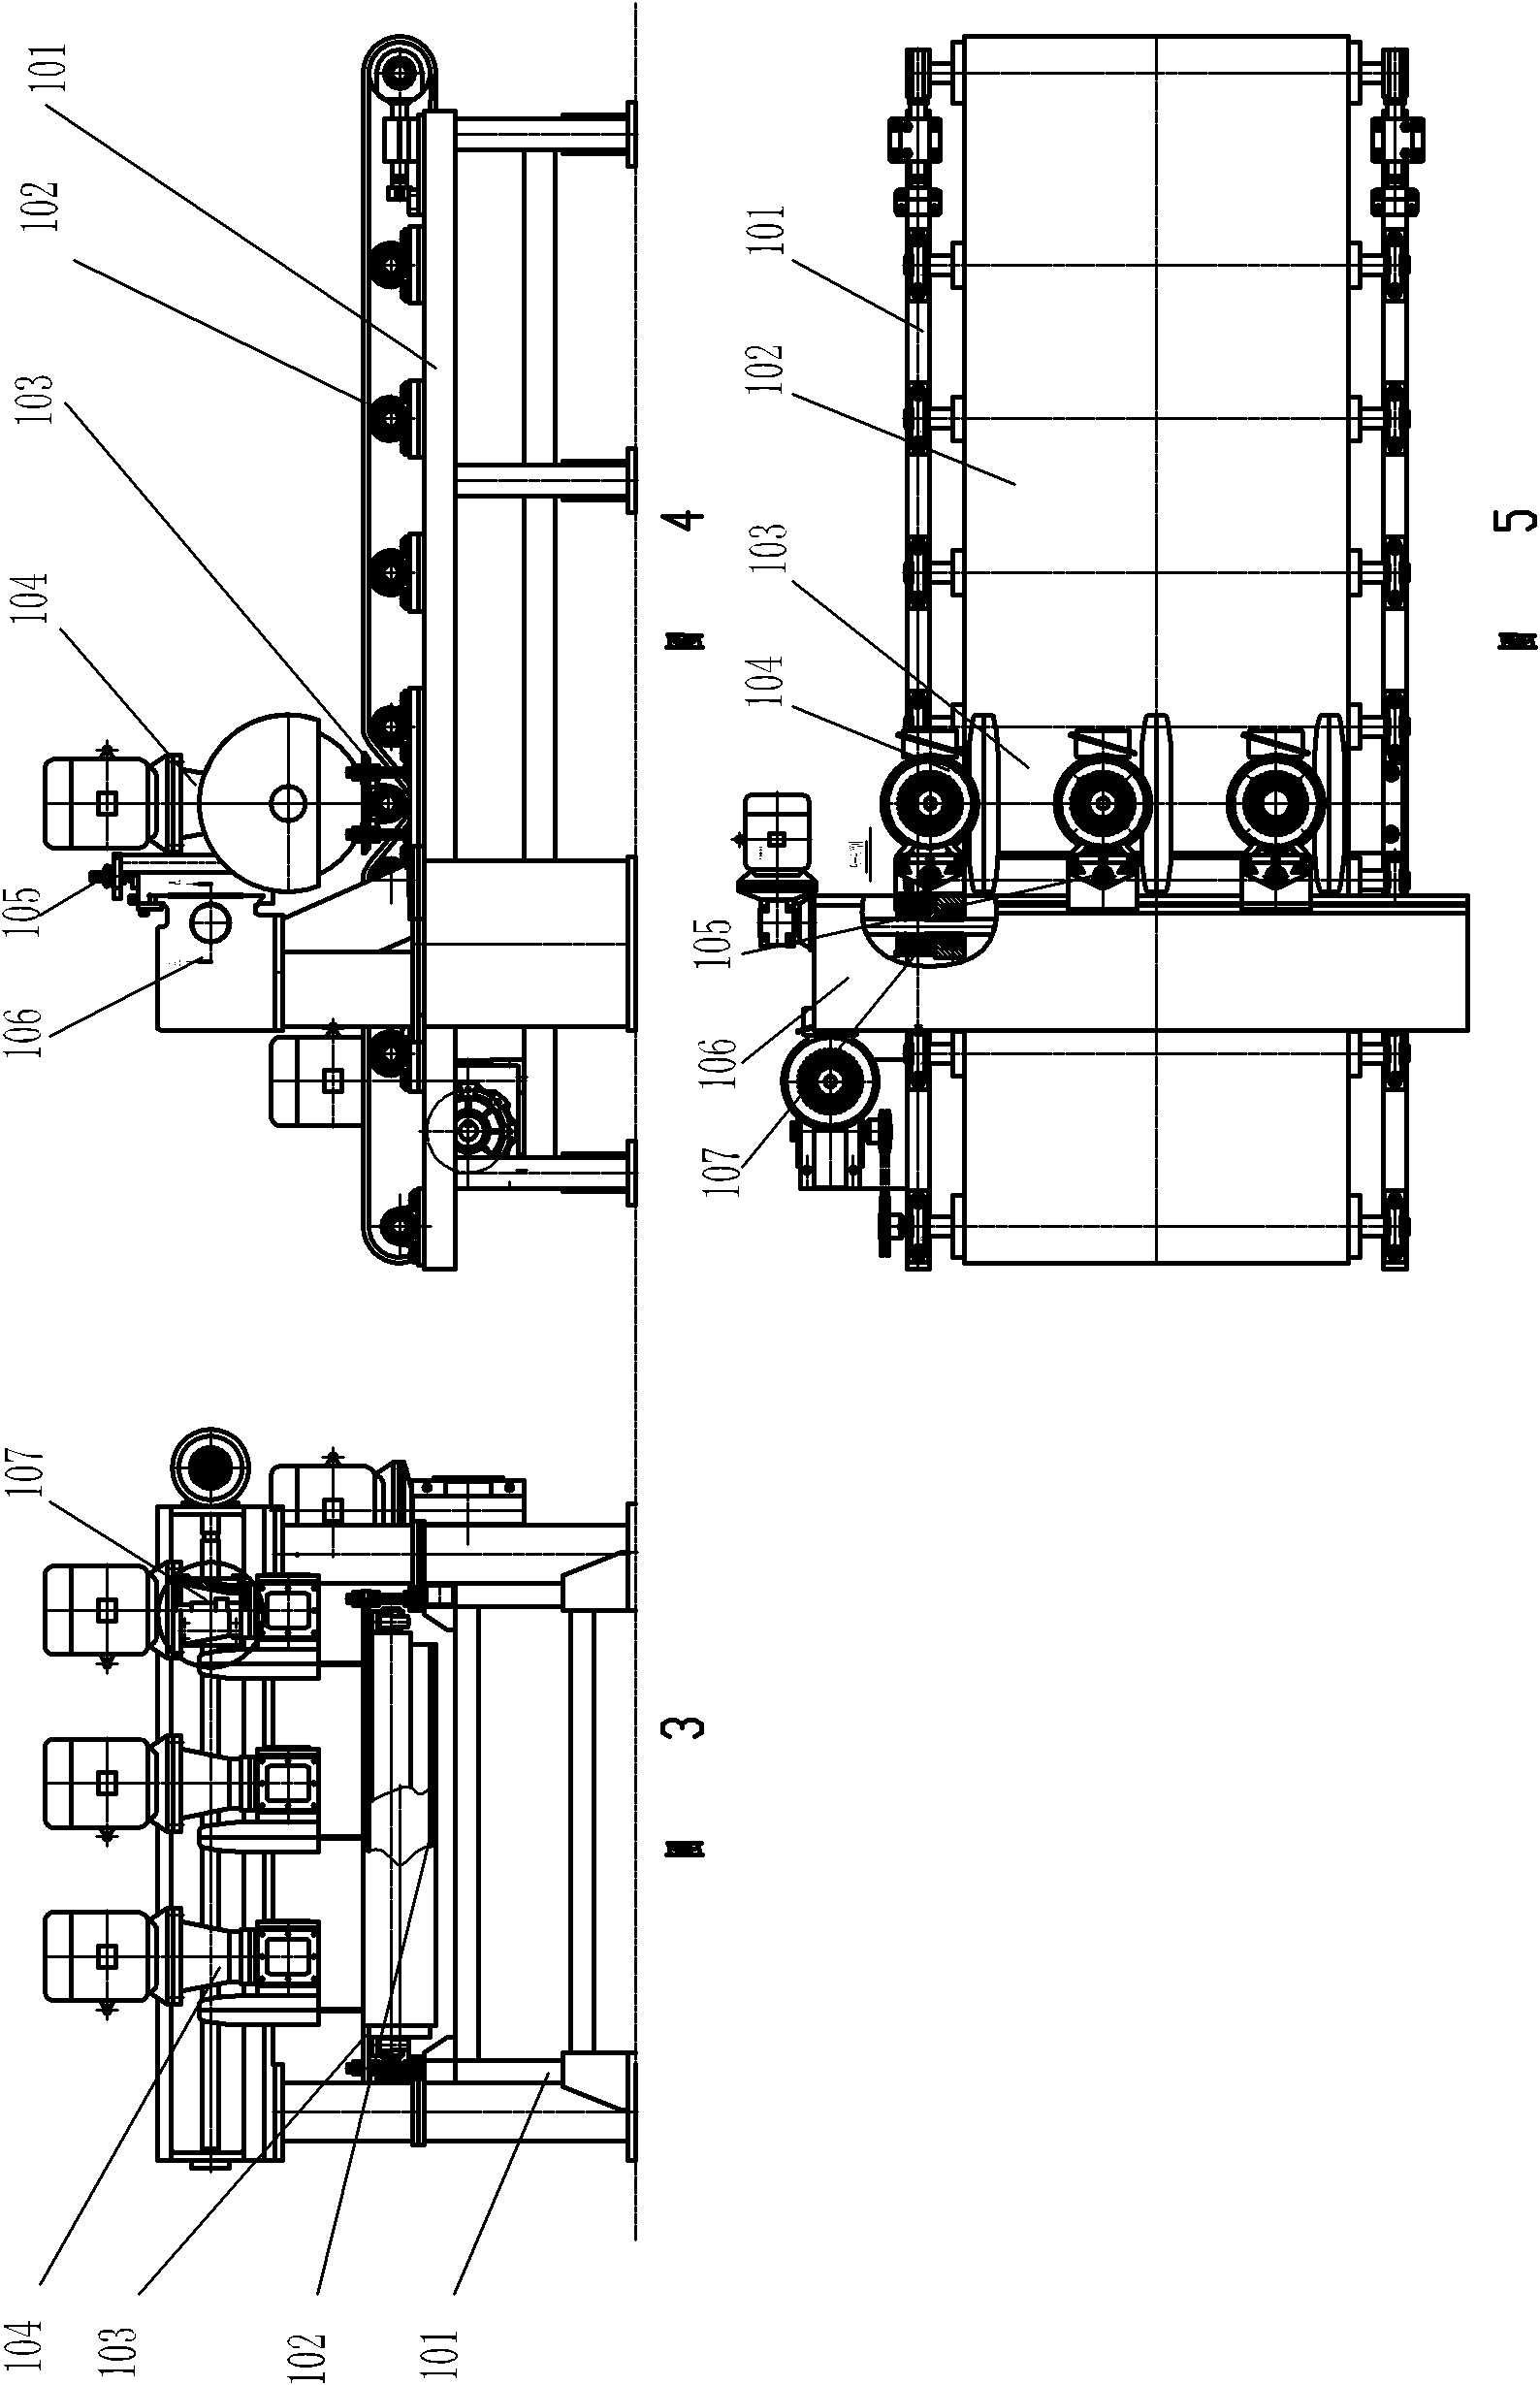 Full-automatic vertical-horizontal multi-cutter combined edge cutting machine